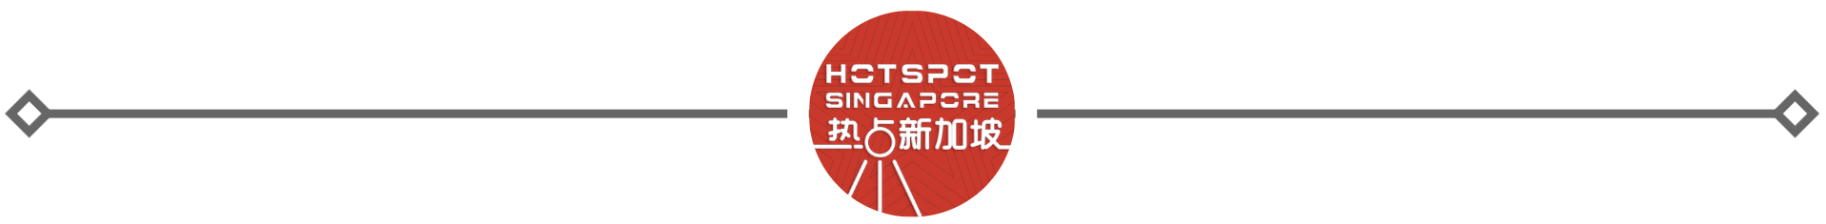 中国出入境便利举措频出 华侨华人受益匪浅-热点新加坡